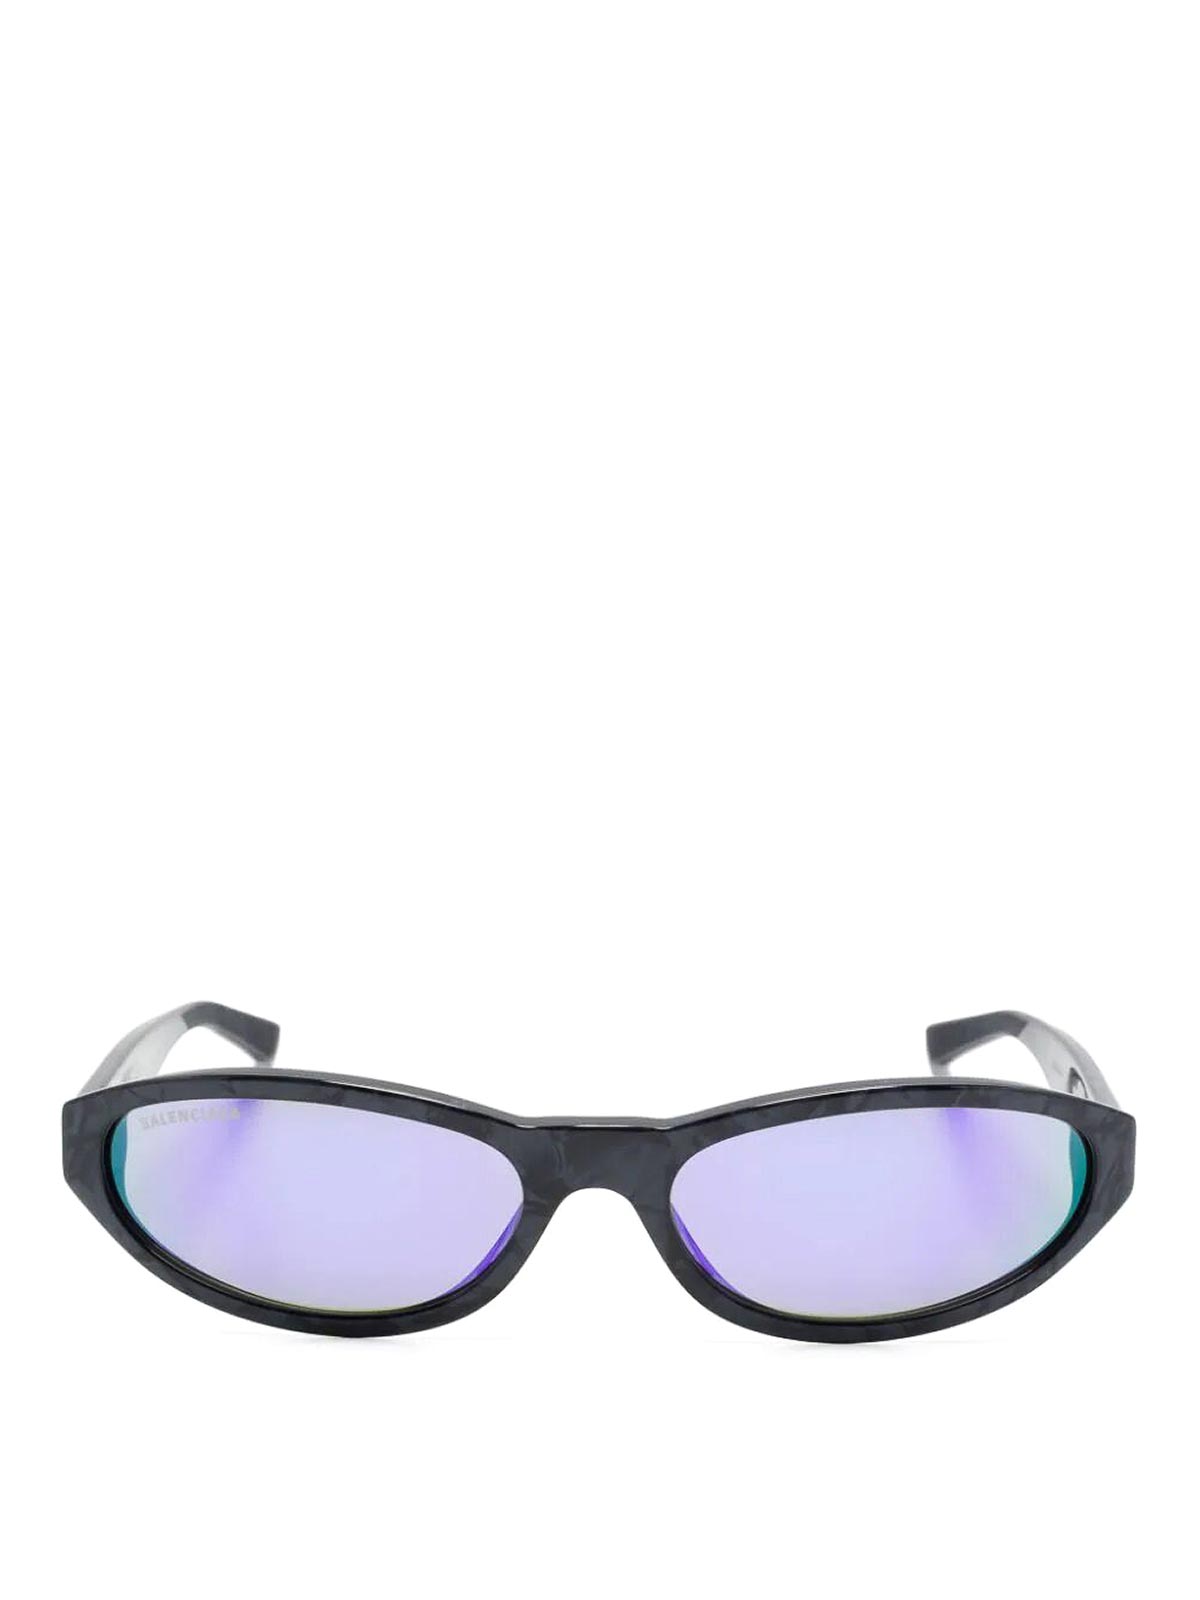 Balenciaga Multicolour Sunglasses In Animal Print